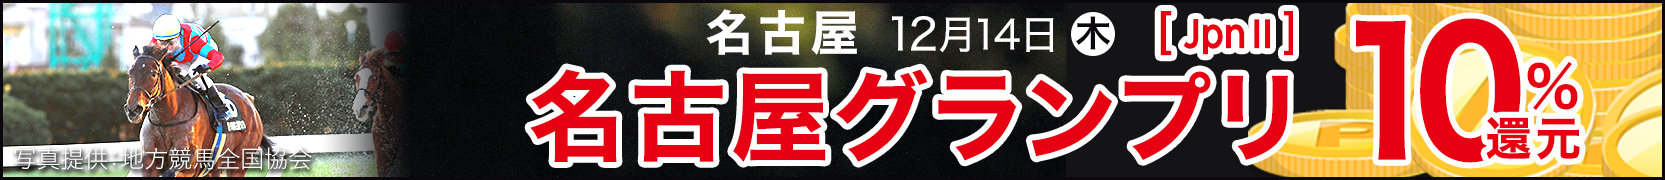 ダートグレード競走キャンペーン 名古屋グランプリ（JpnII)